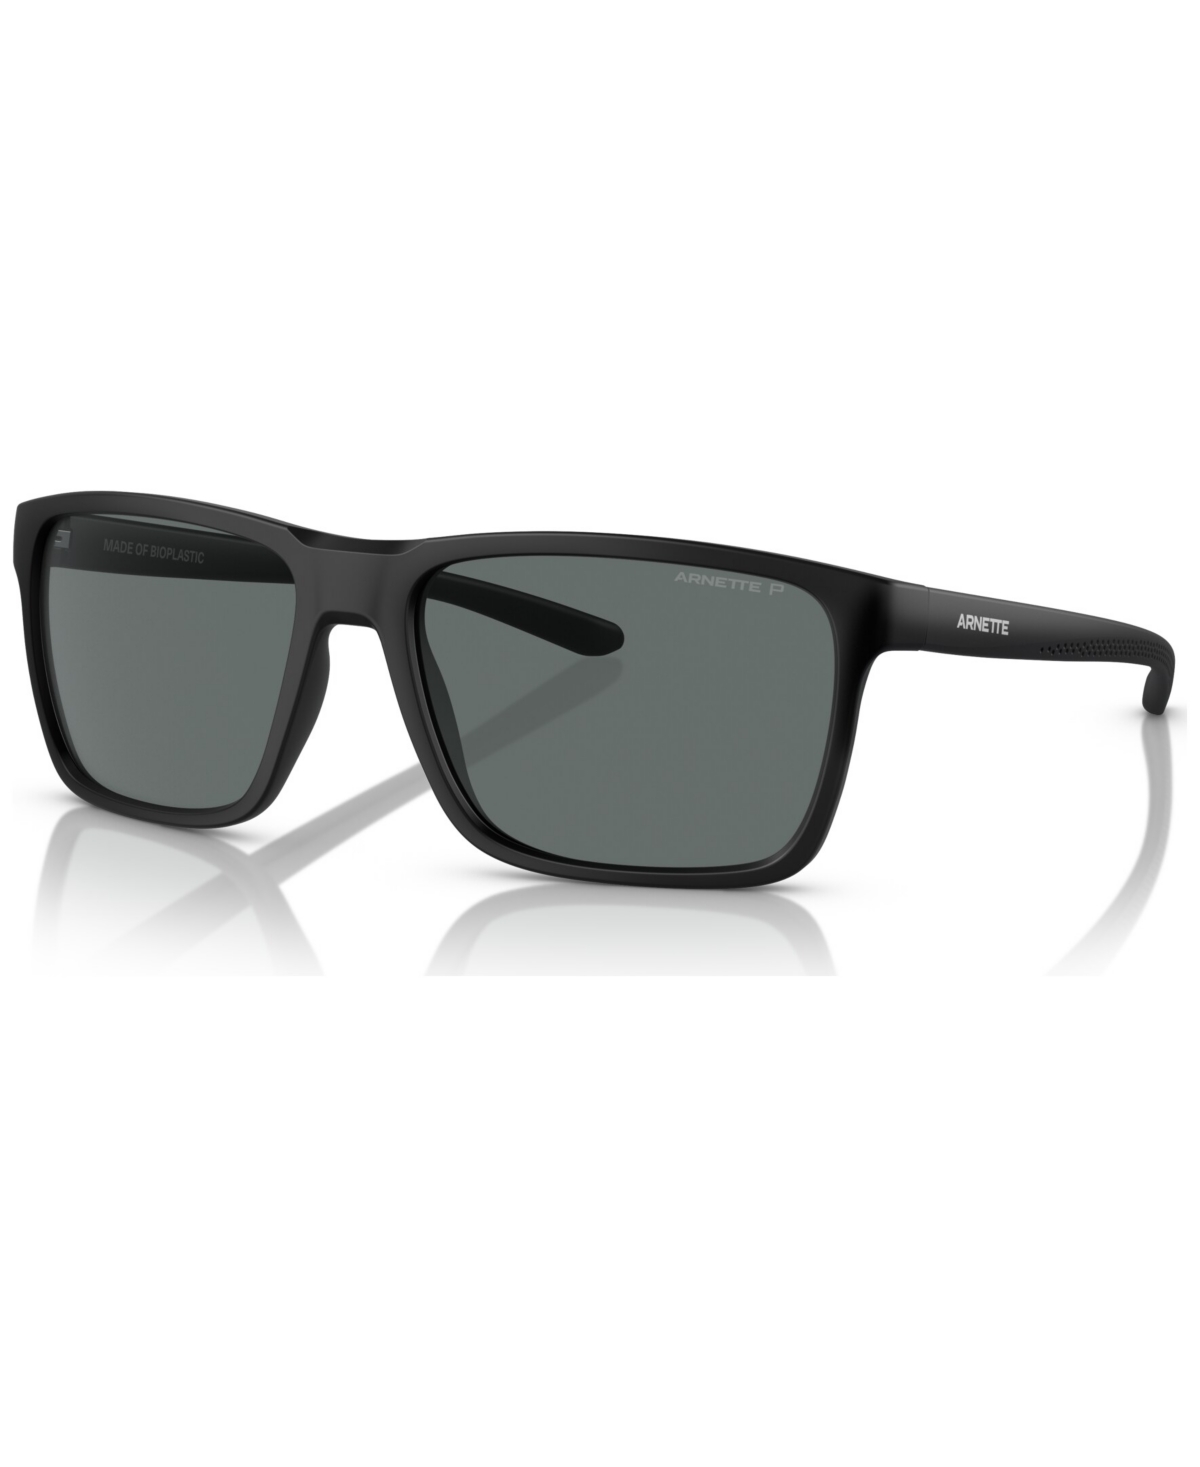 Men's Polarized Sunglasses, Sokatra - Matte Black